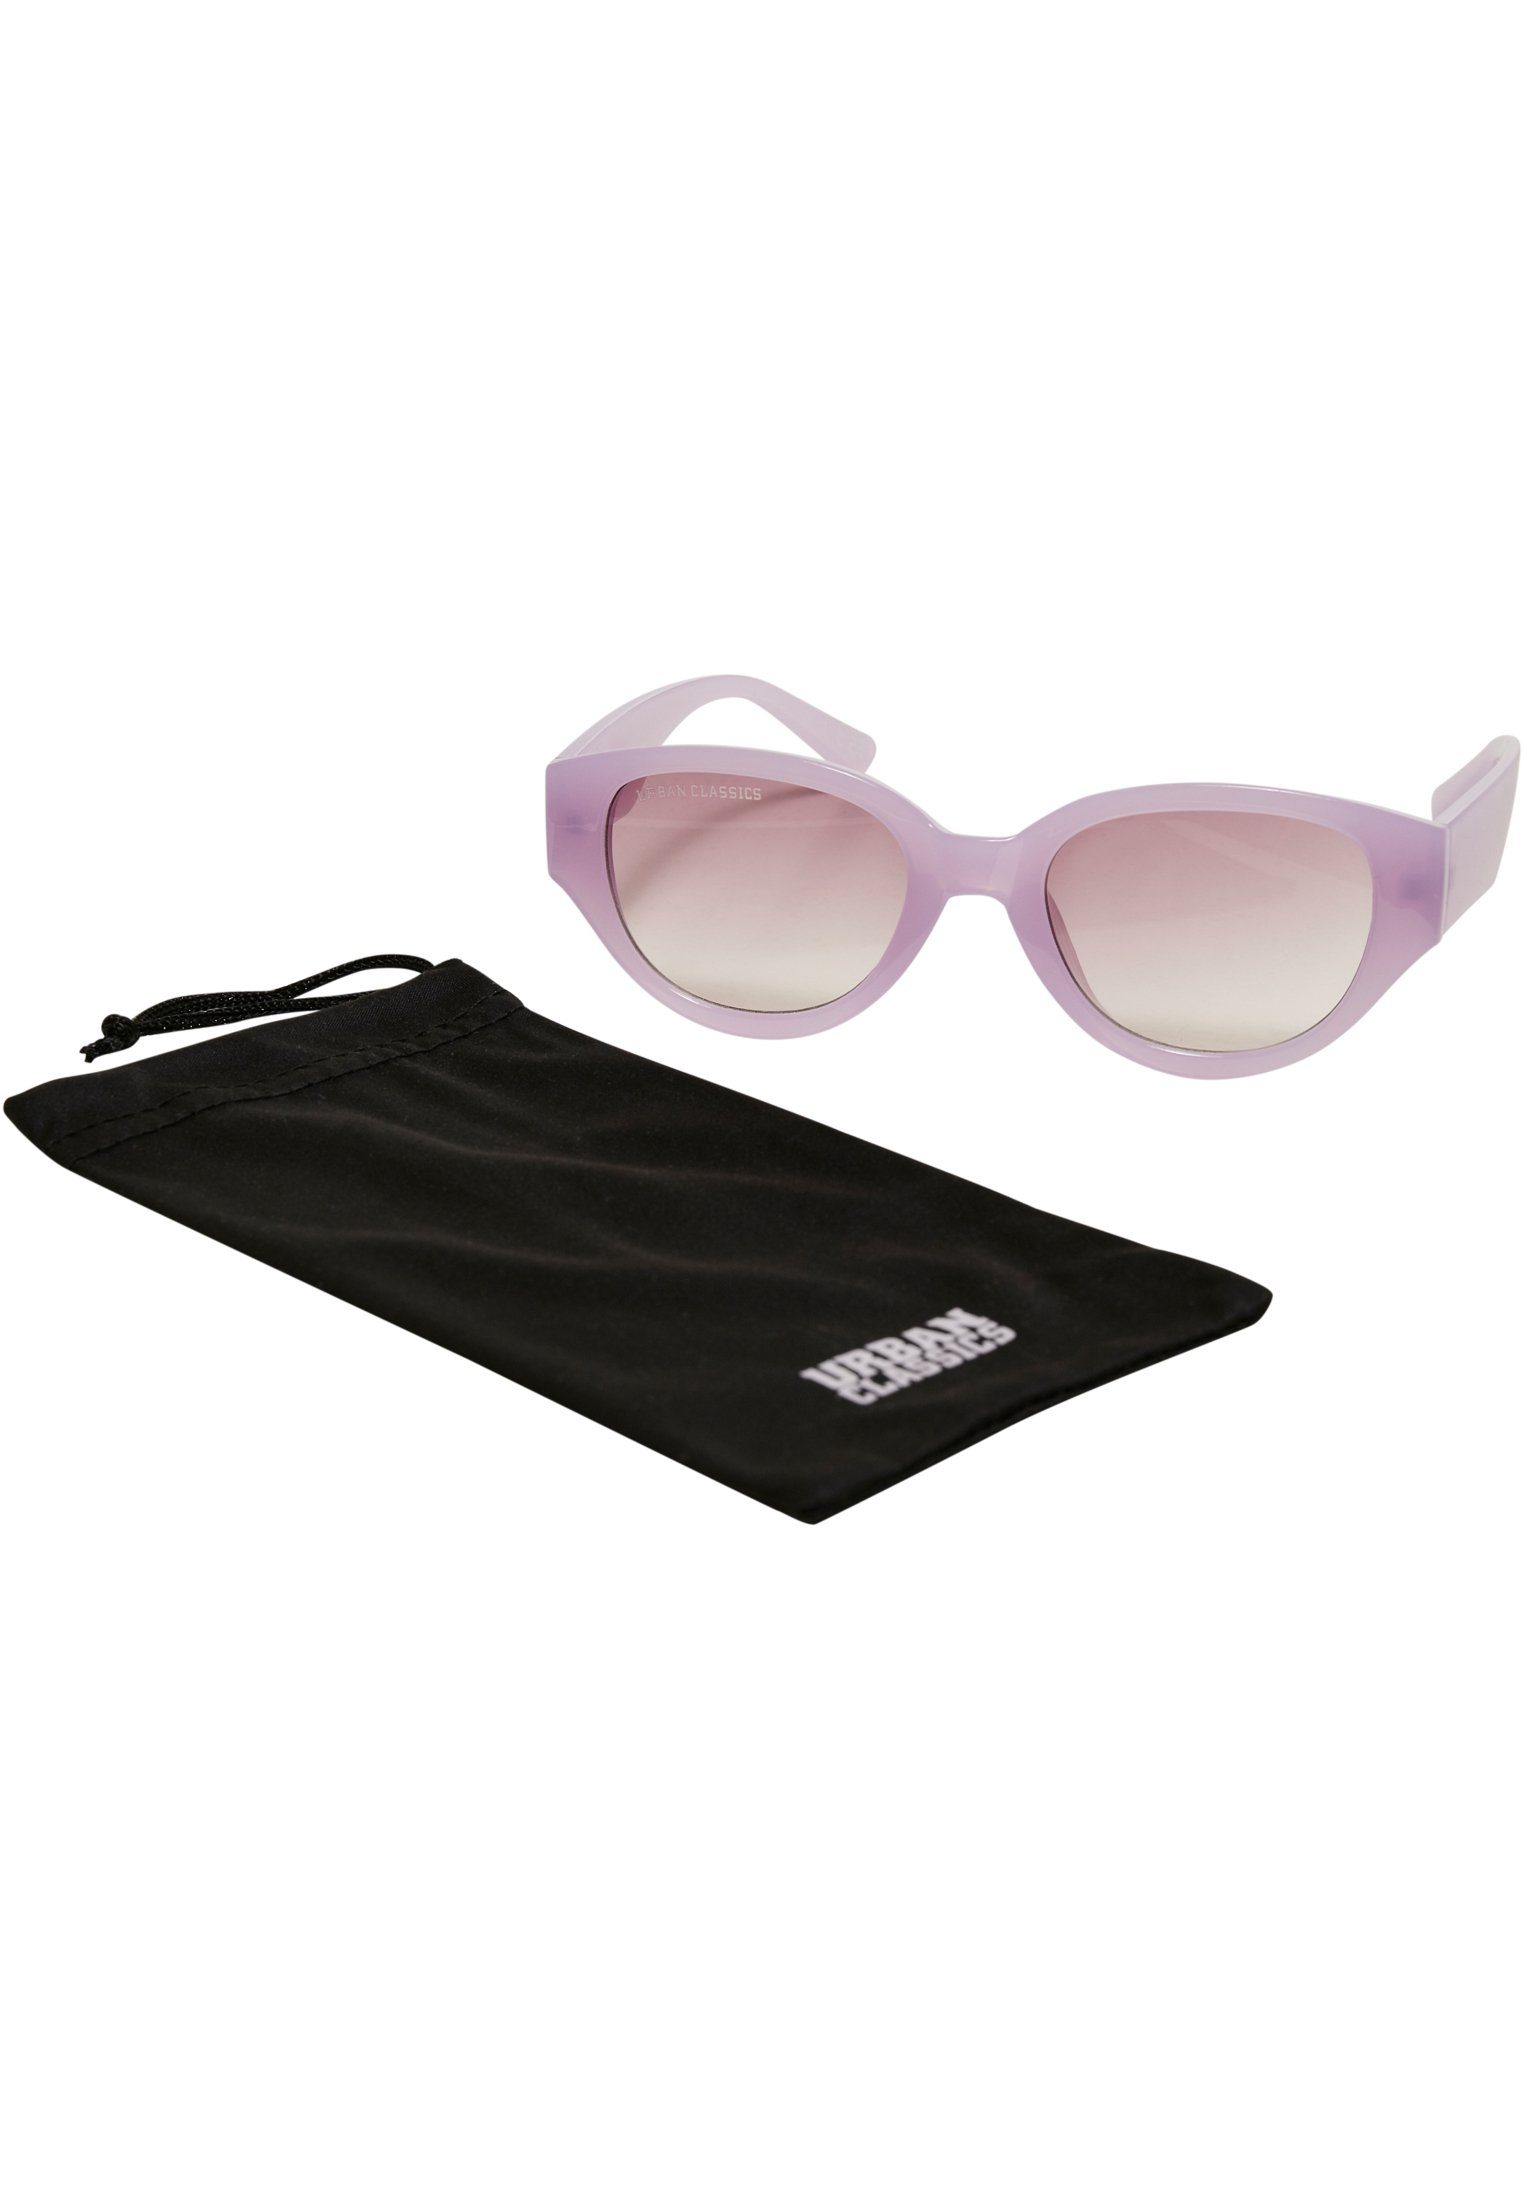 URBAN CLASSICS Sonnenbrille Unisex Sunglasses Santa Cruz softlilac